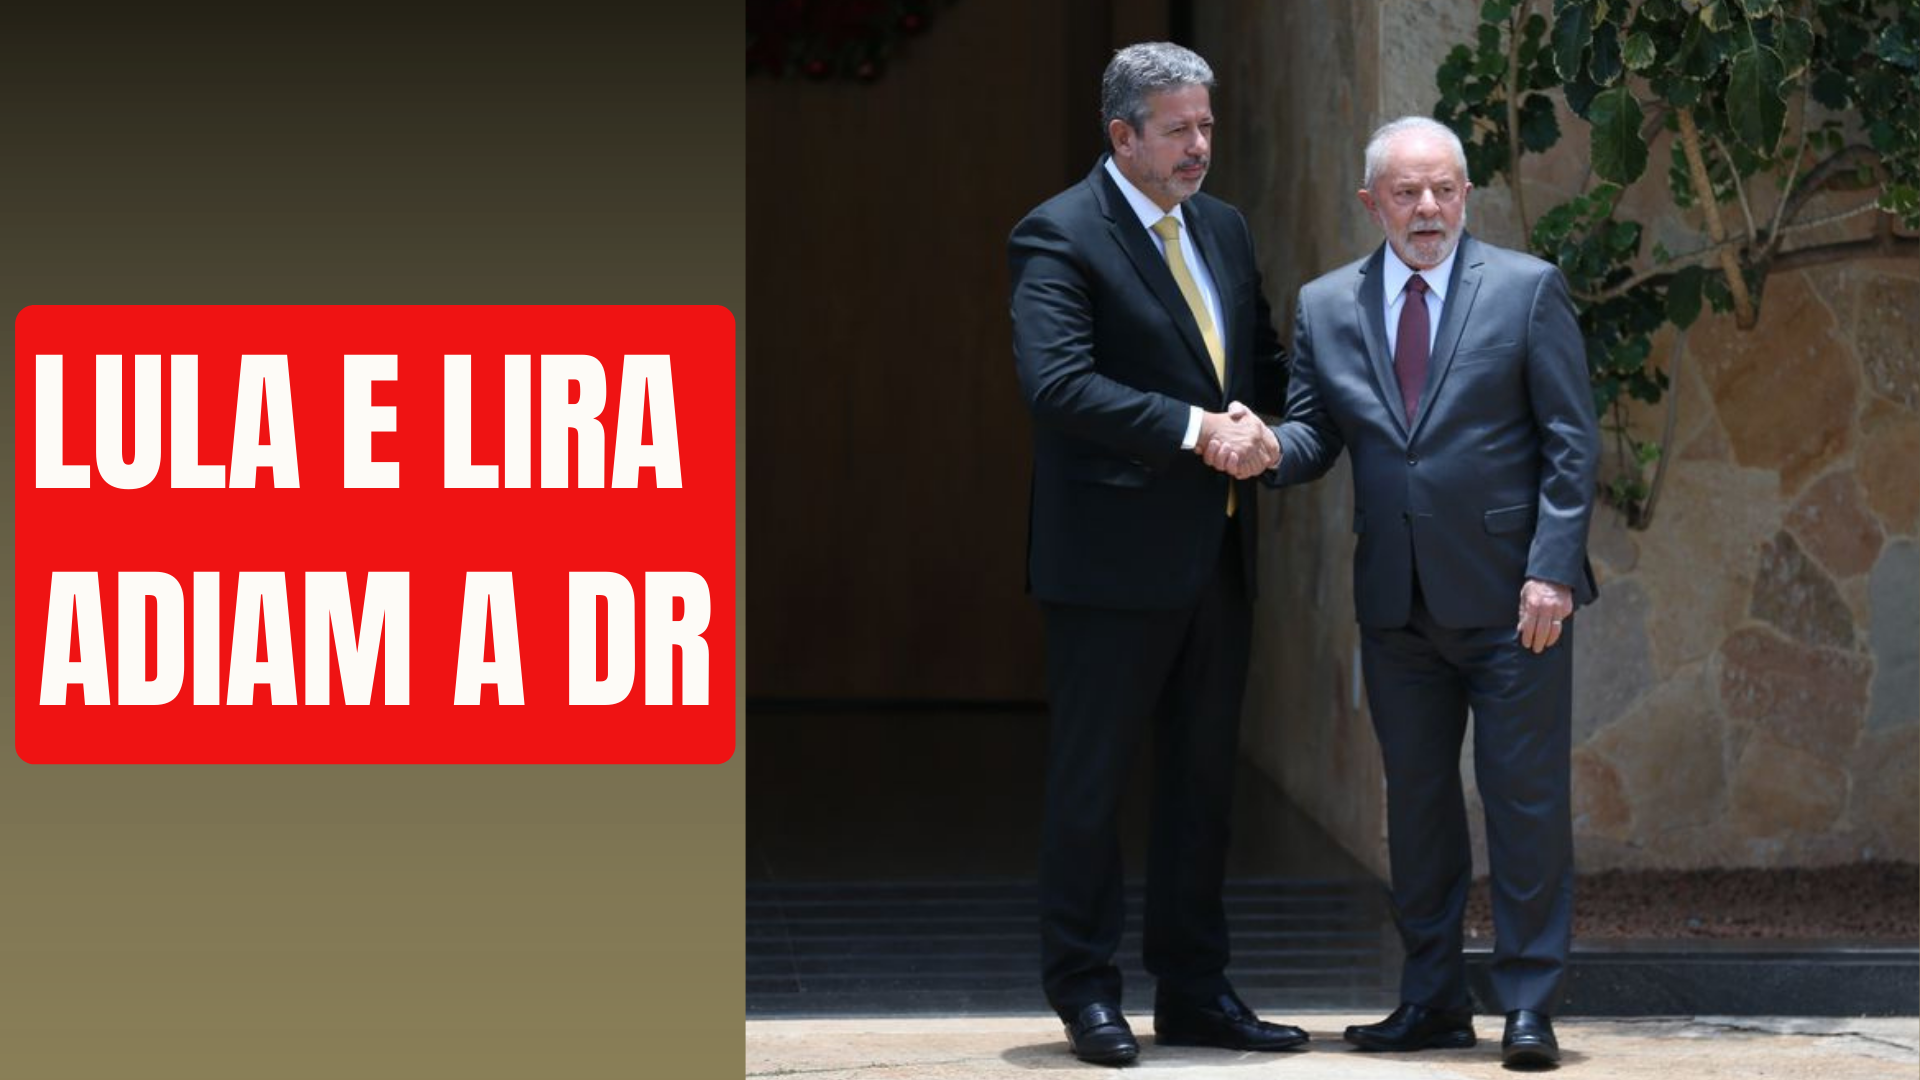 BRASÍLIA JÁ: Brasil em compasso de espera – Lula e Lira adiam a DR